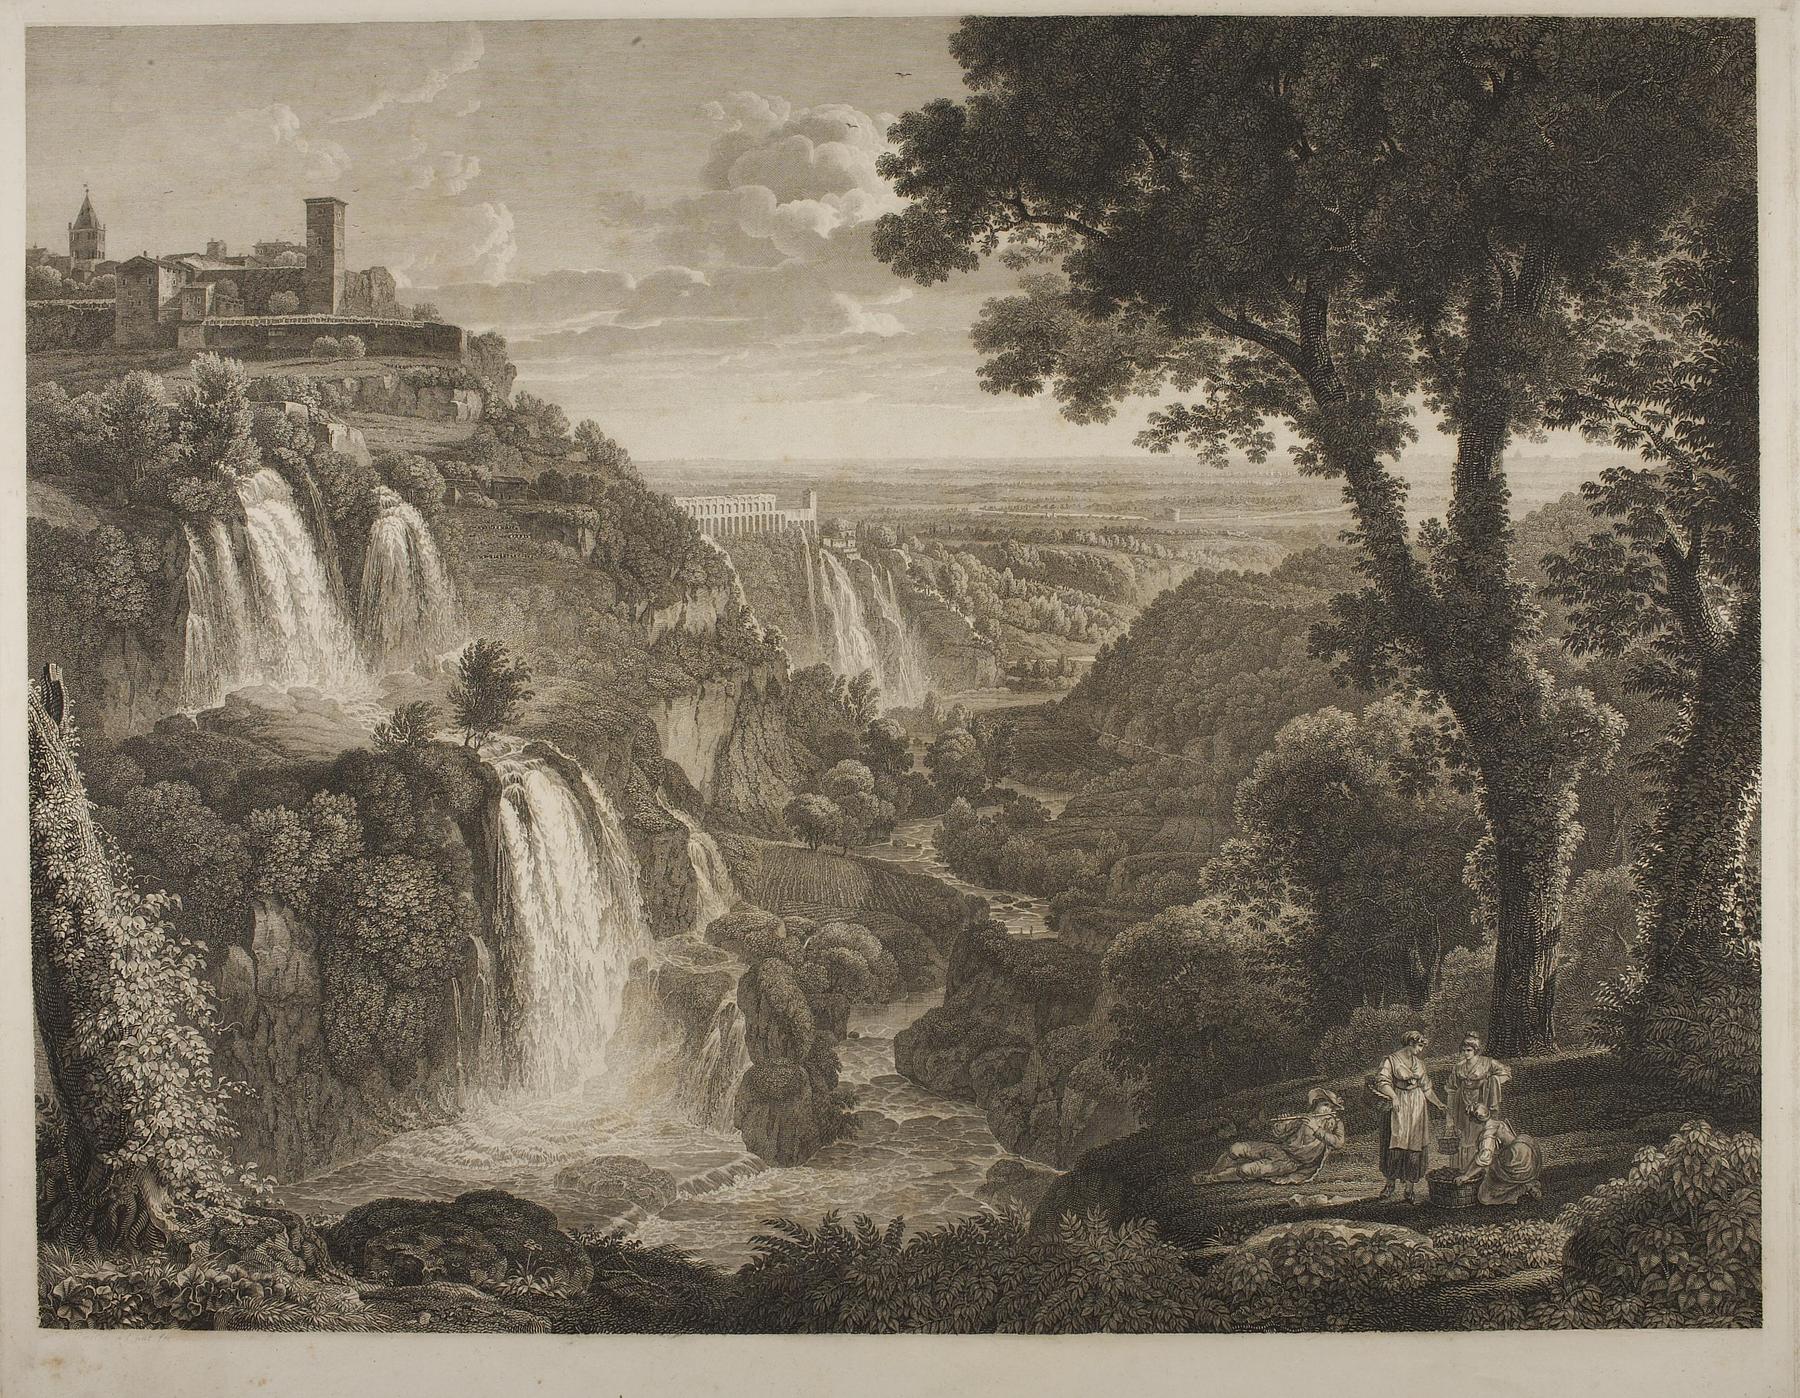 Prospekt af de store og små vandfald i Tivoli, E590